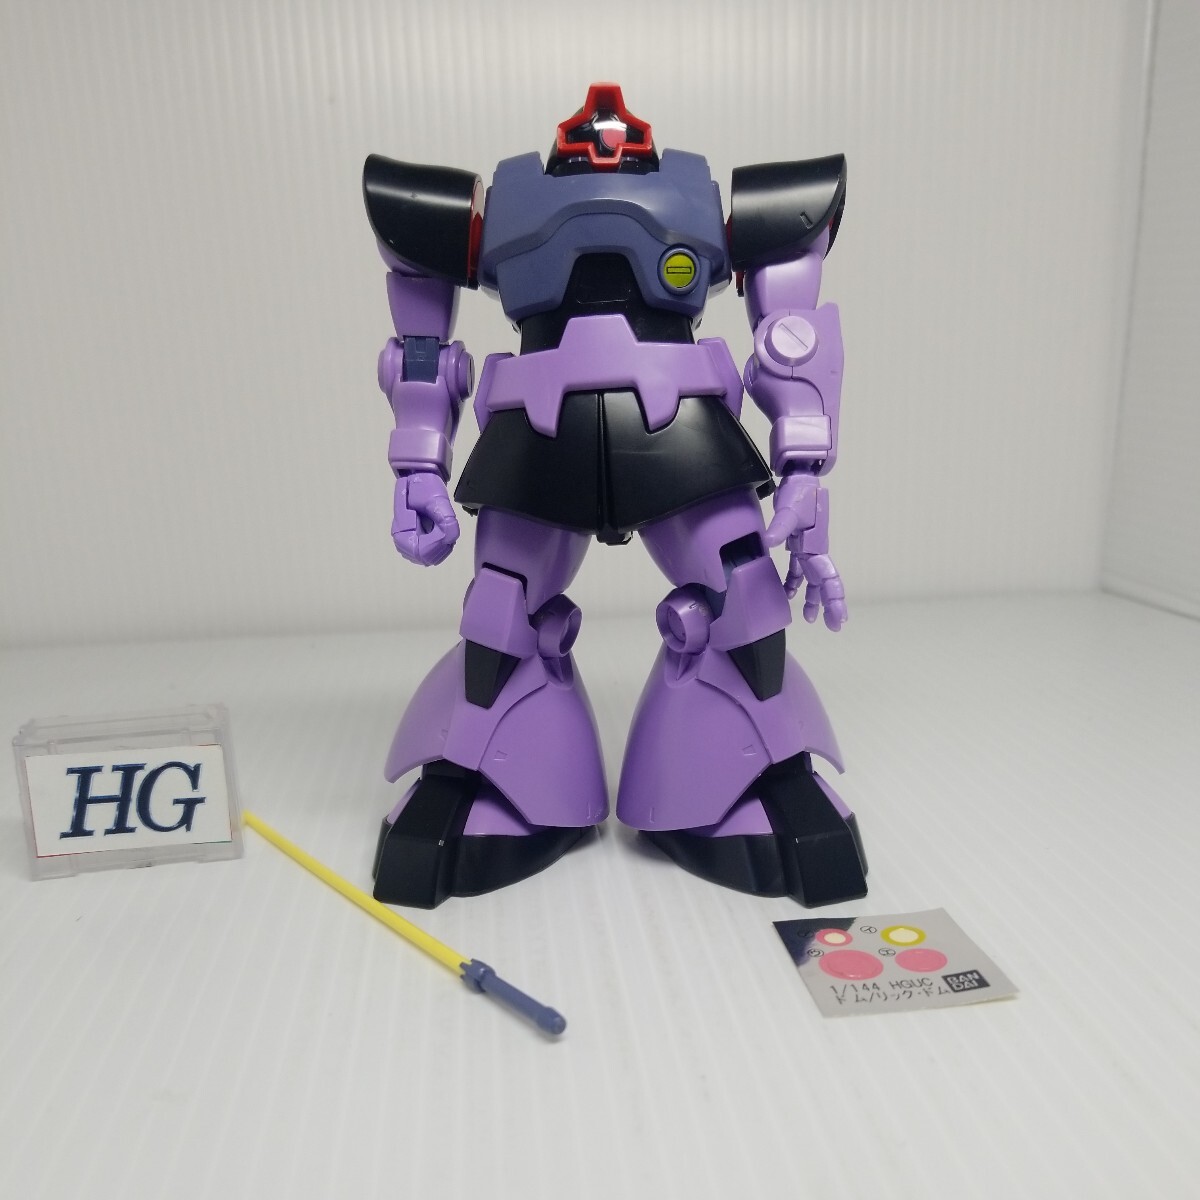 oka-100g 5/8 HGdom1 Gundam включение в покупку возможно gun pra Junk 